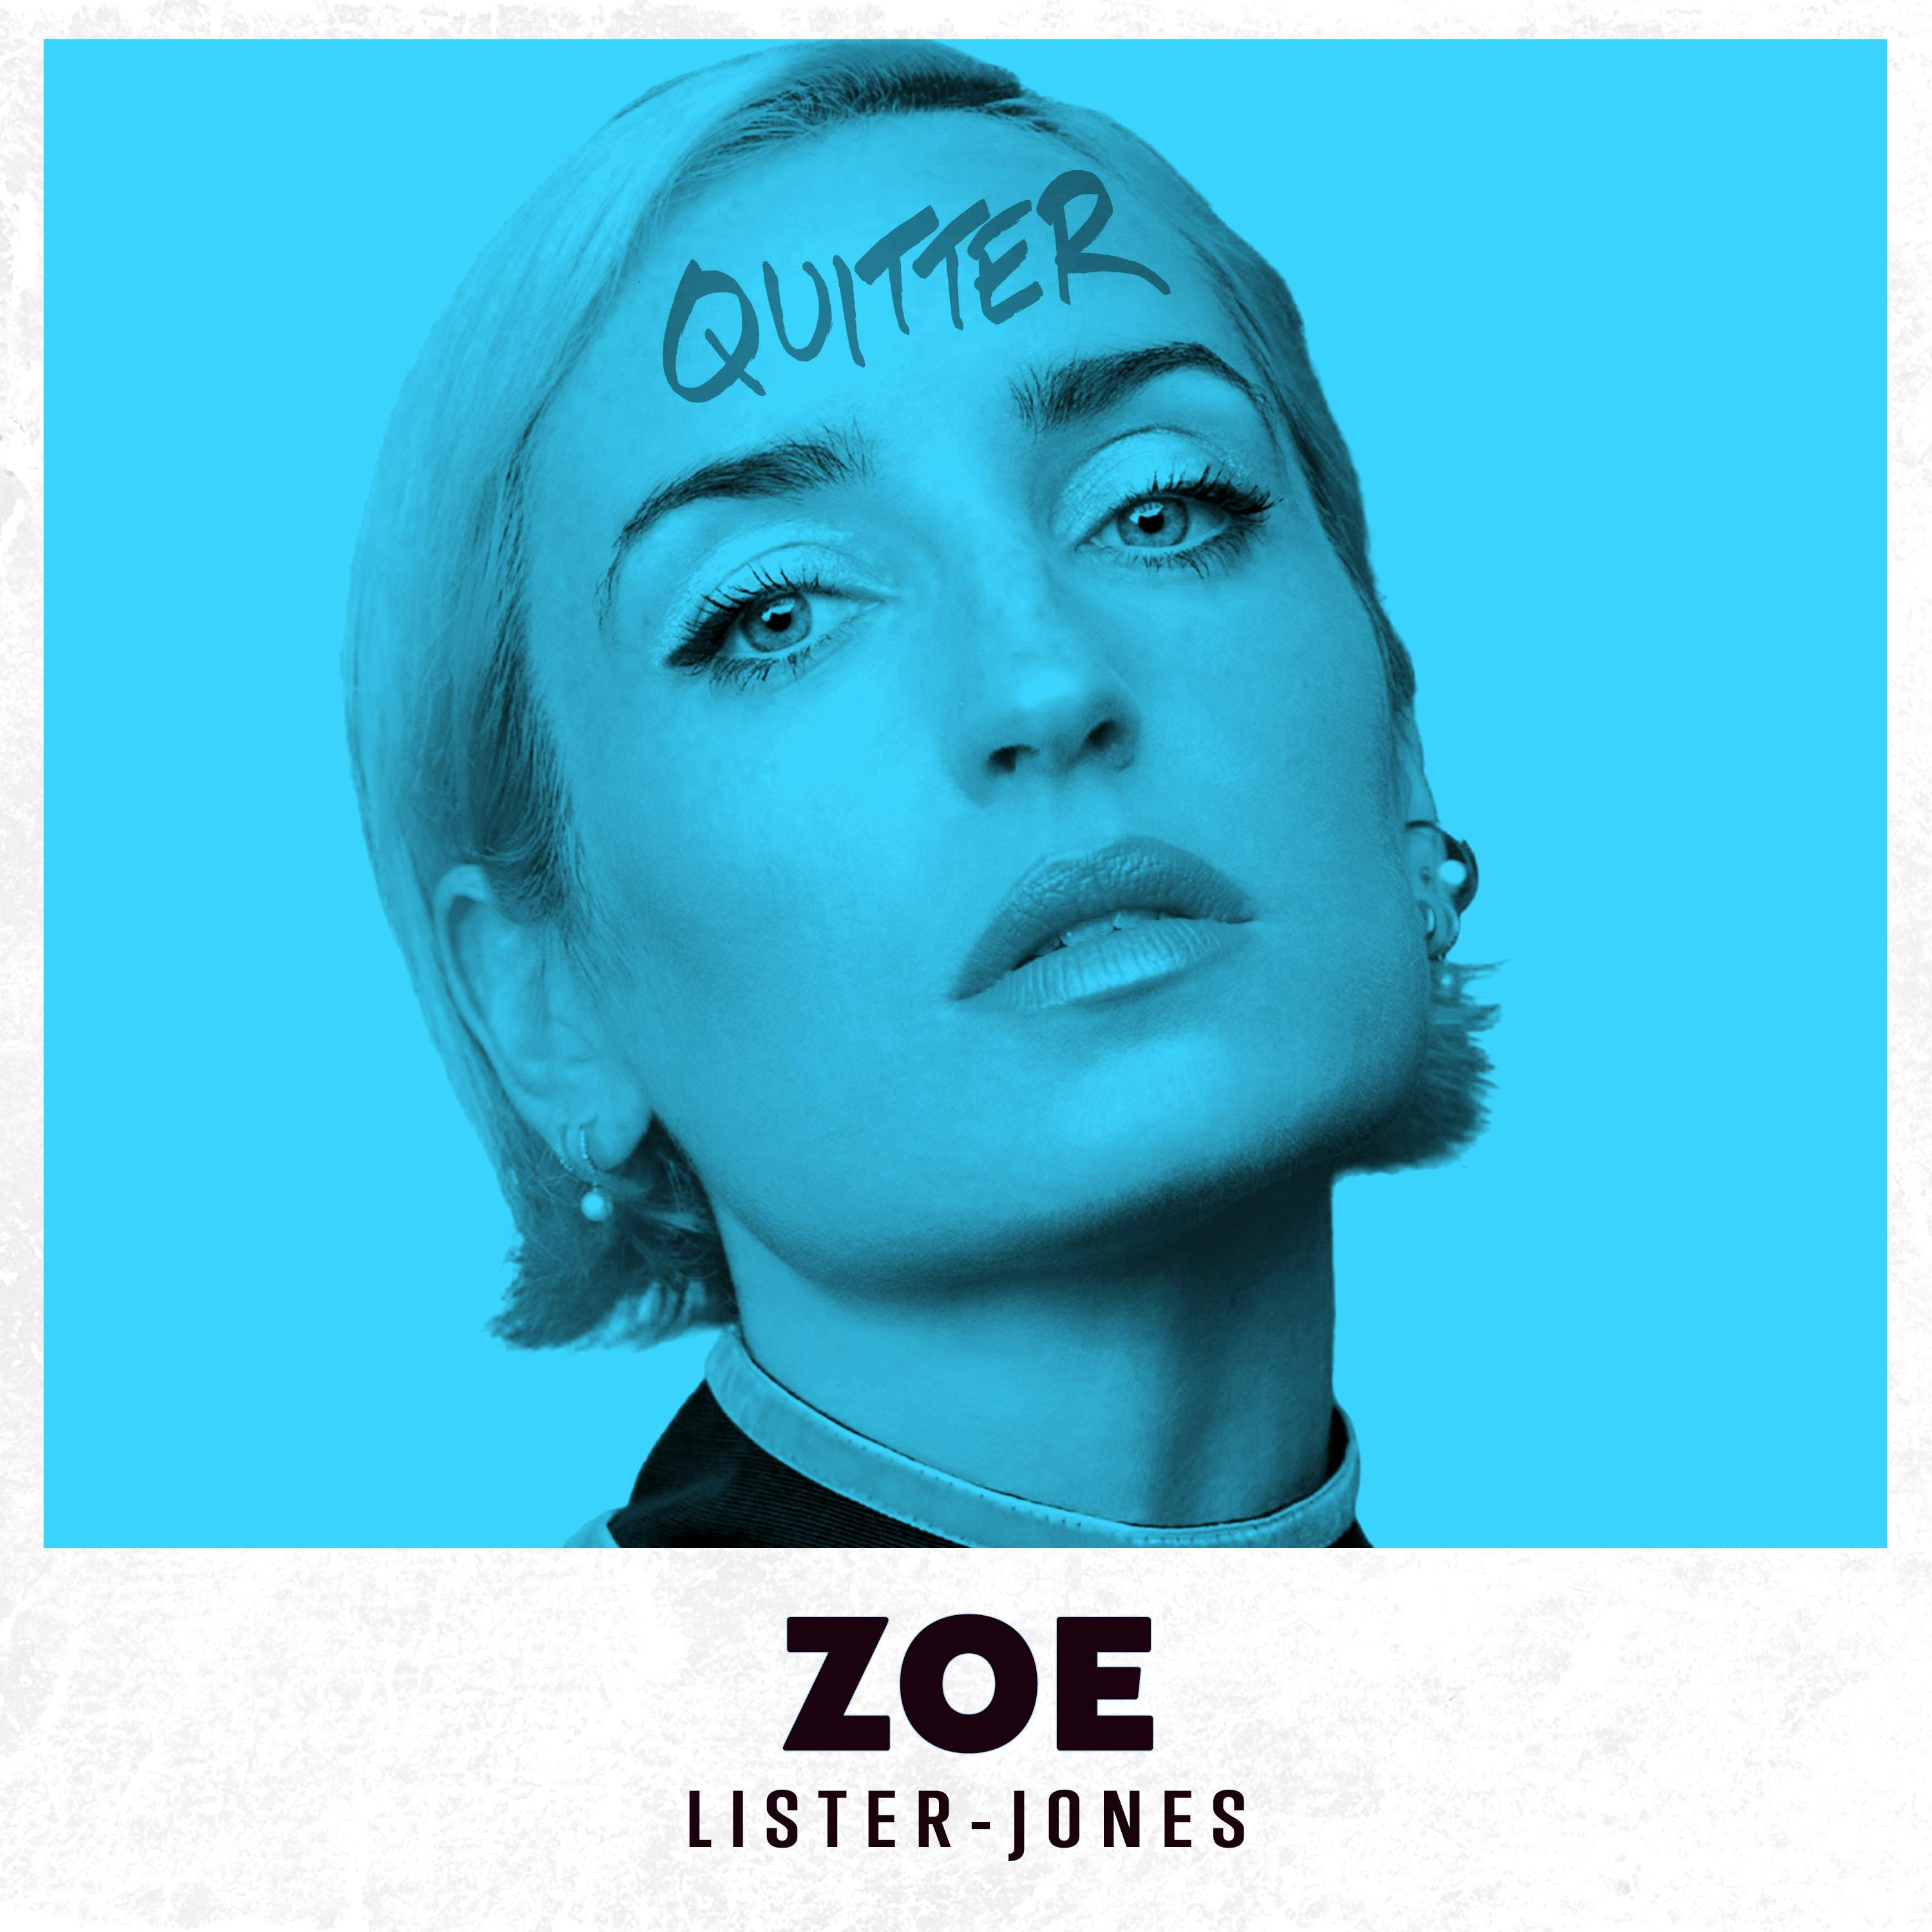 Zoe Lister-Jones